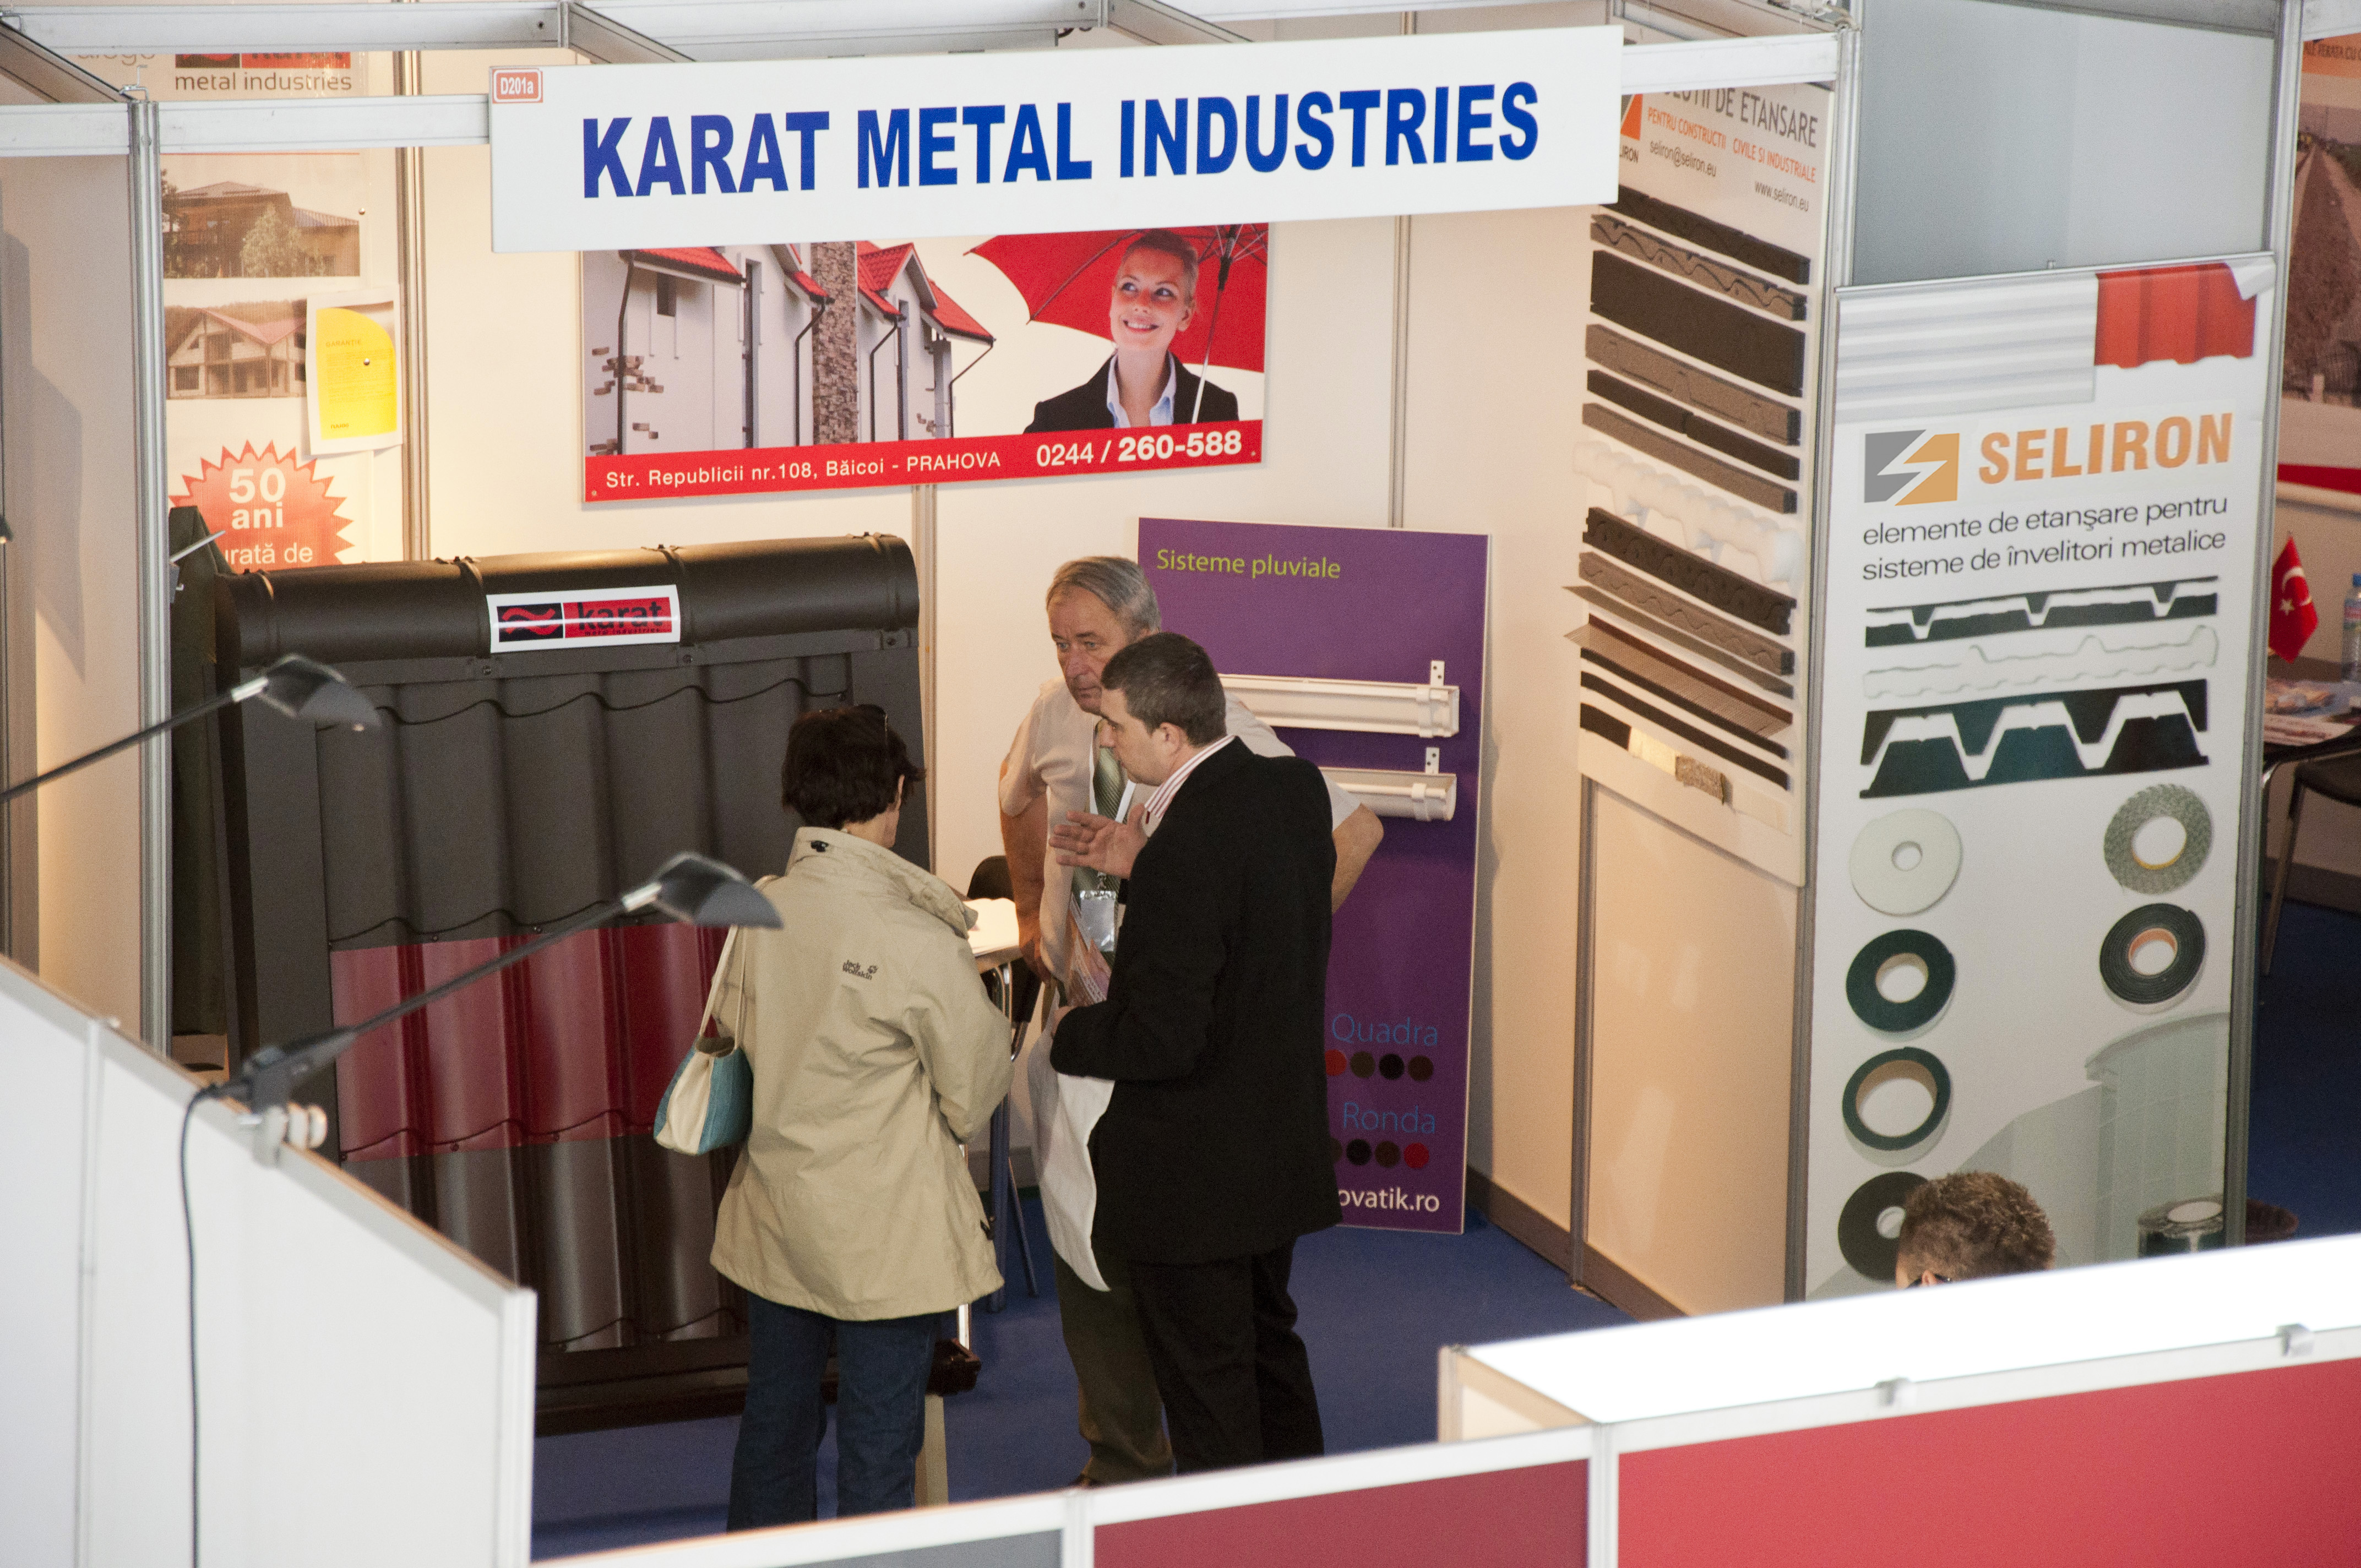 Karat Metal Industries - Karat Metal Industries